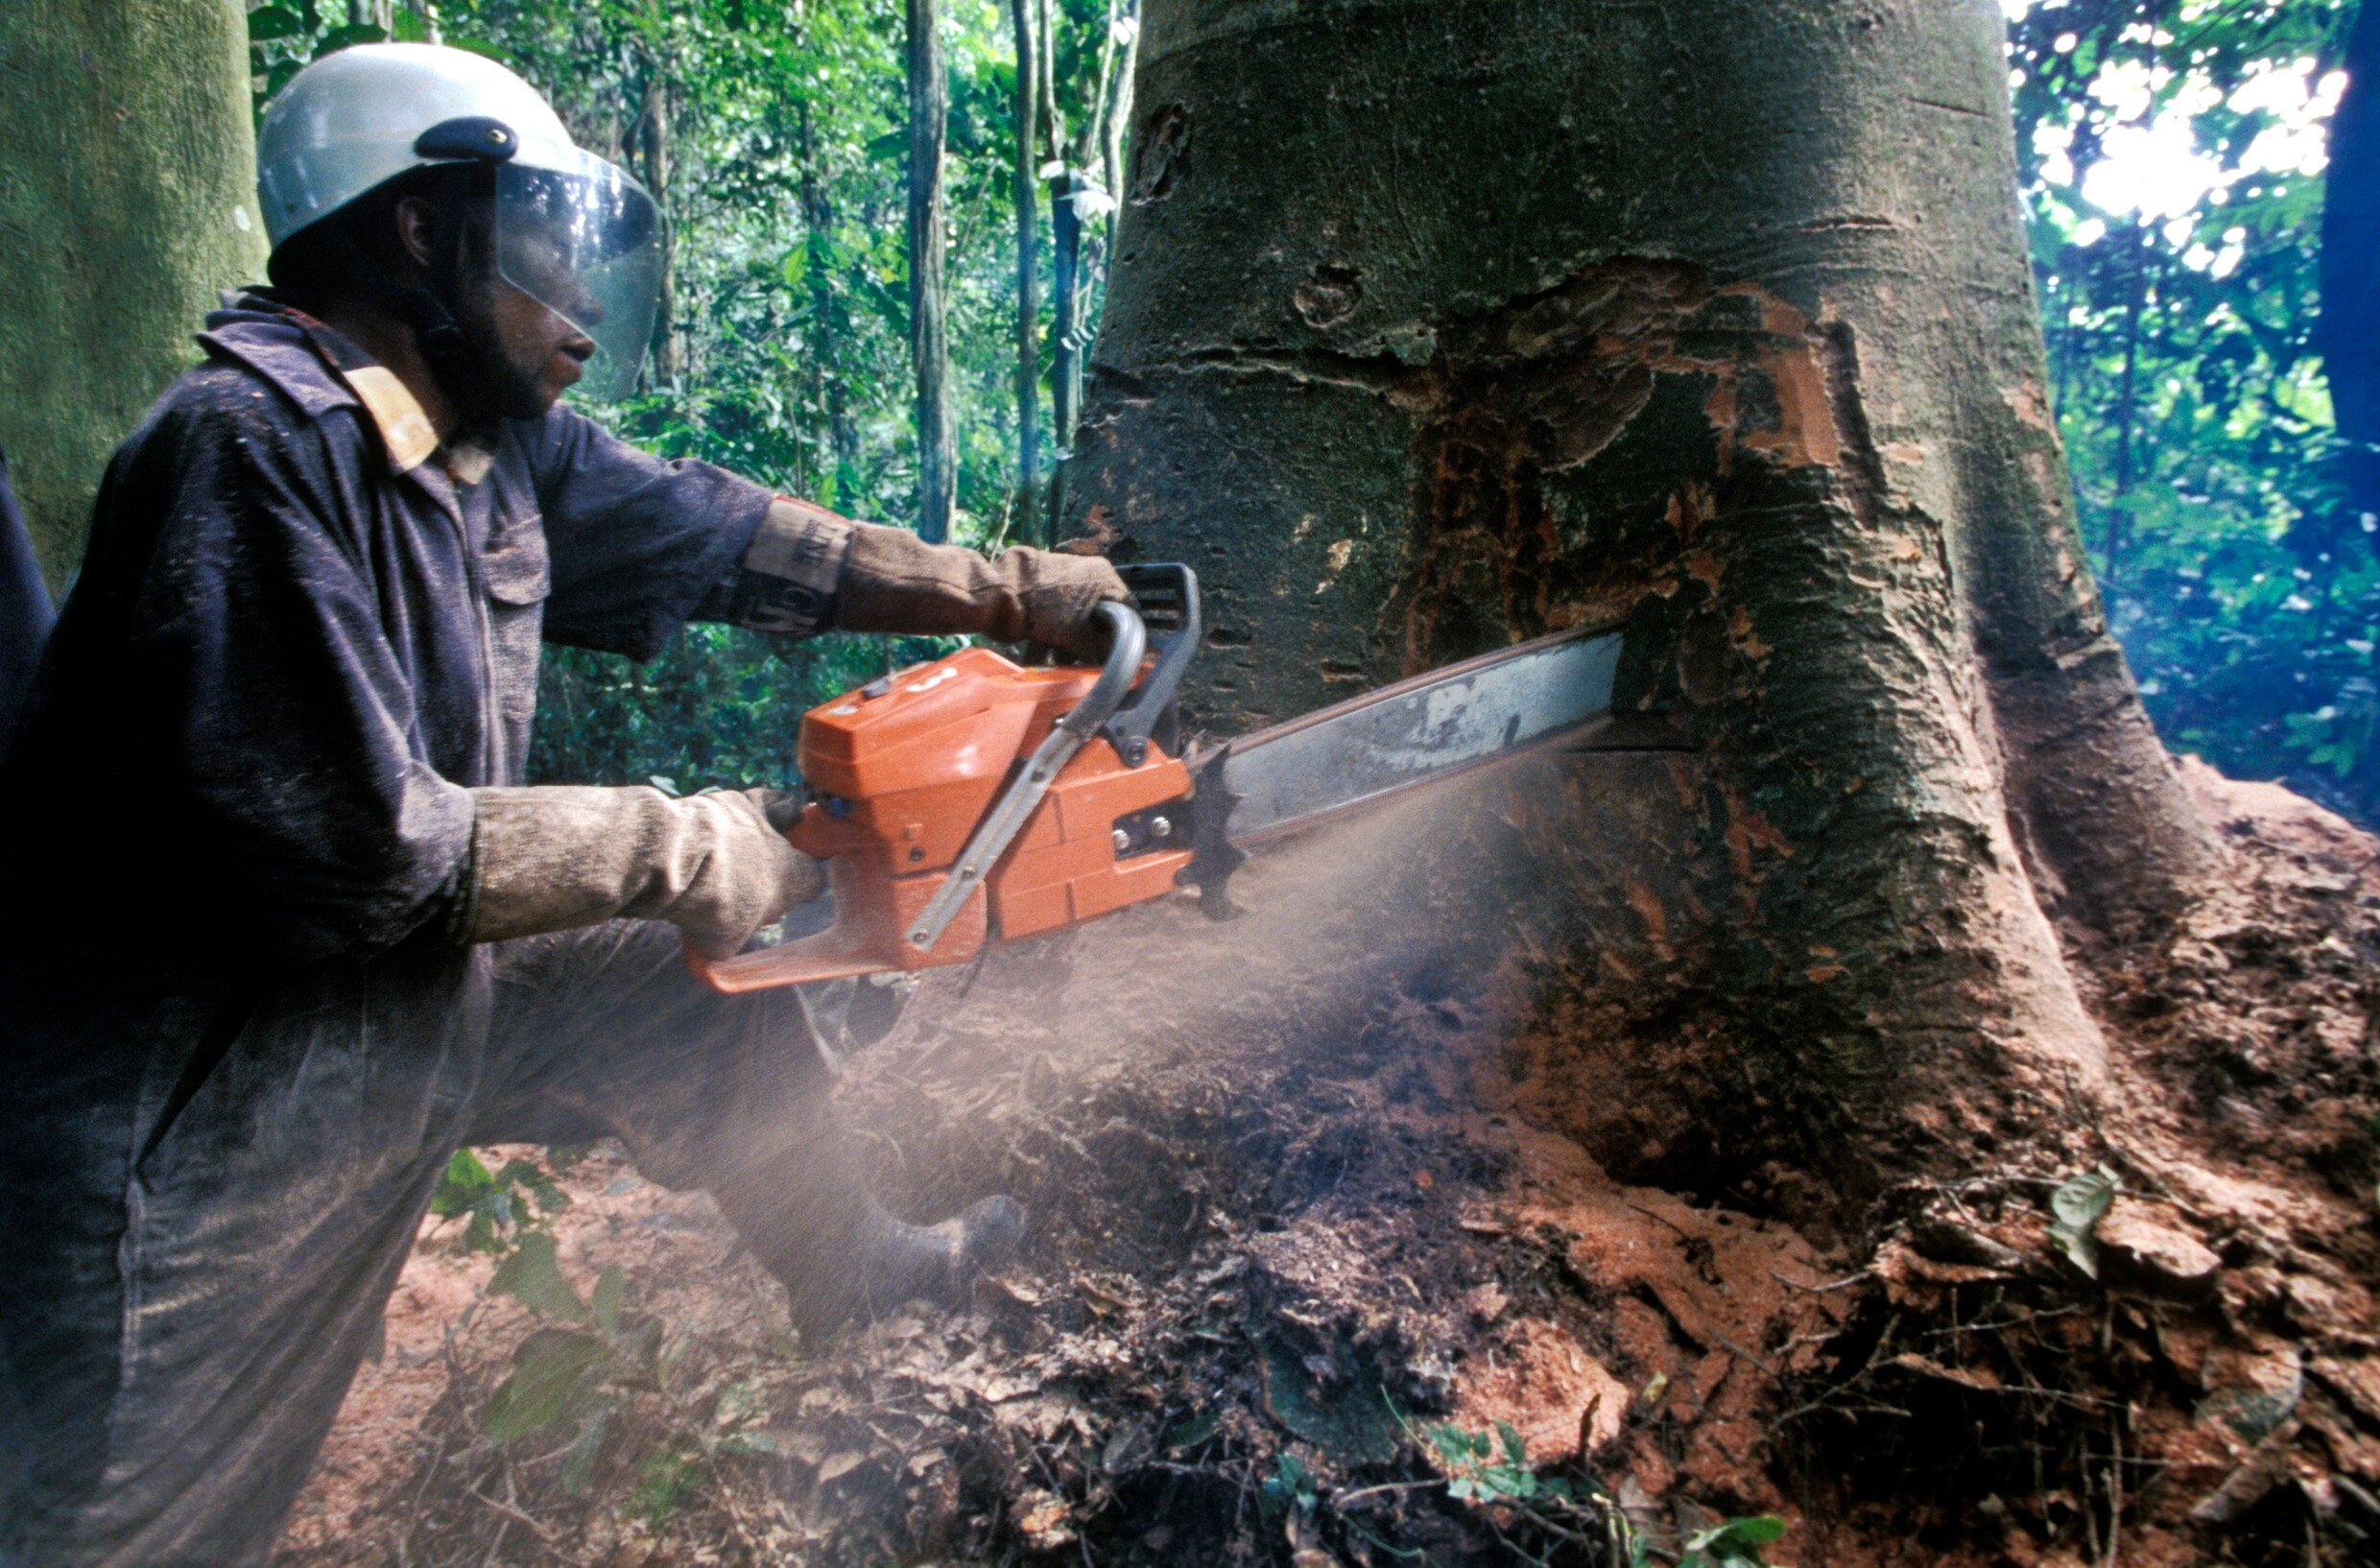 "Kleine groep Congolezen verantwoordelijk voor grootste deel ontbossing"